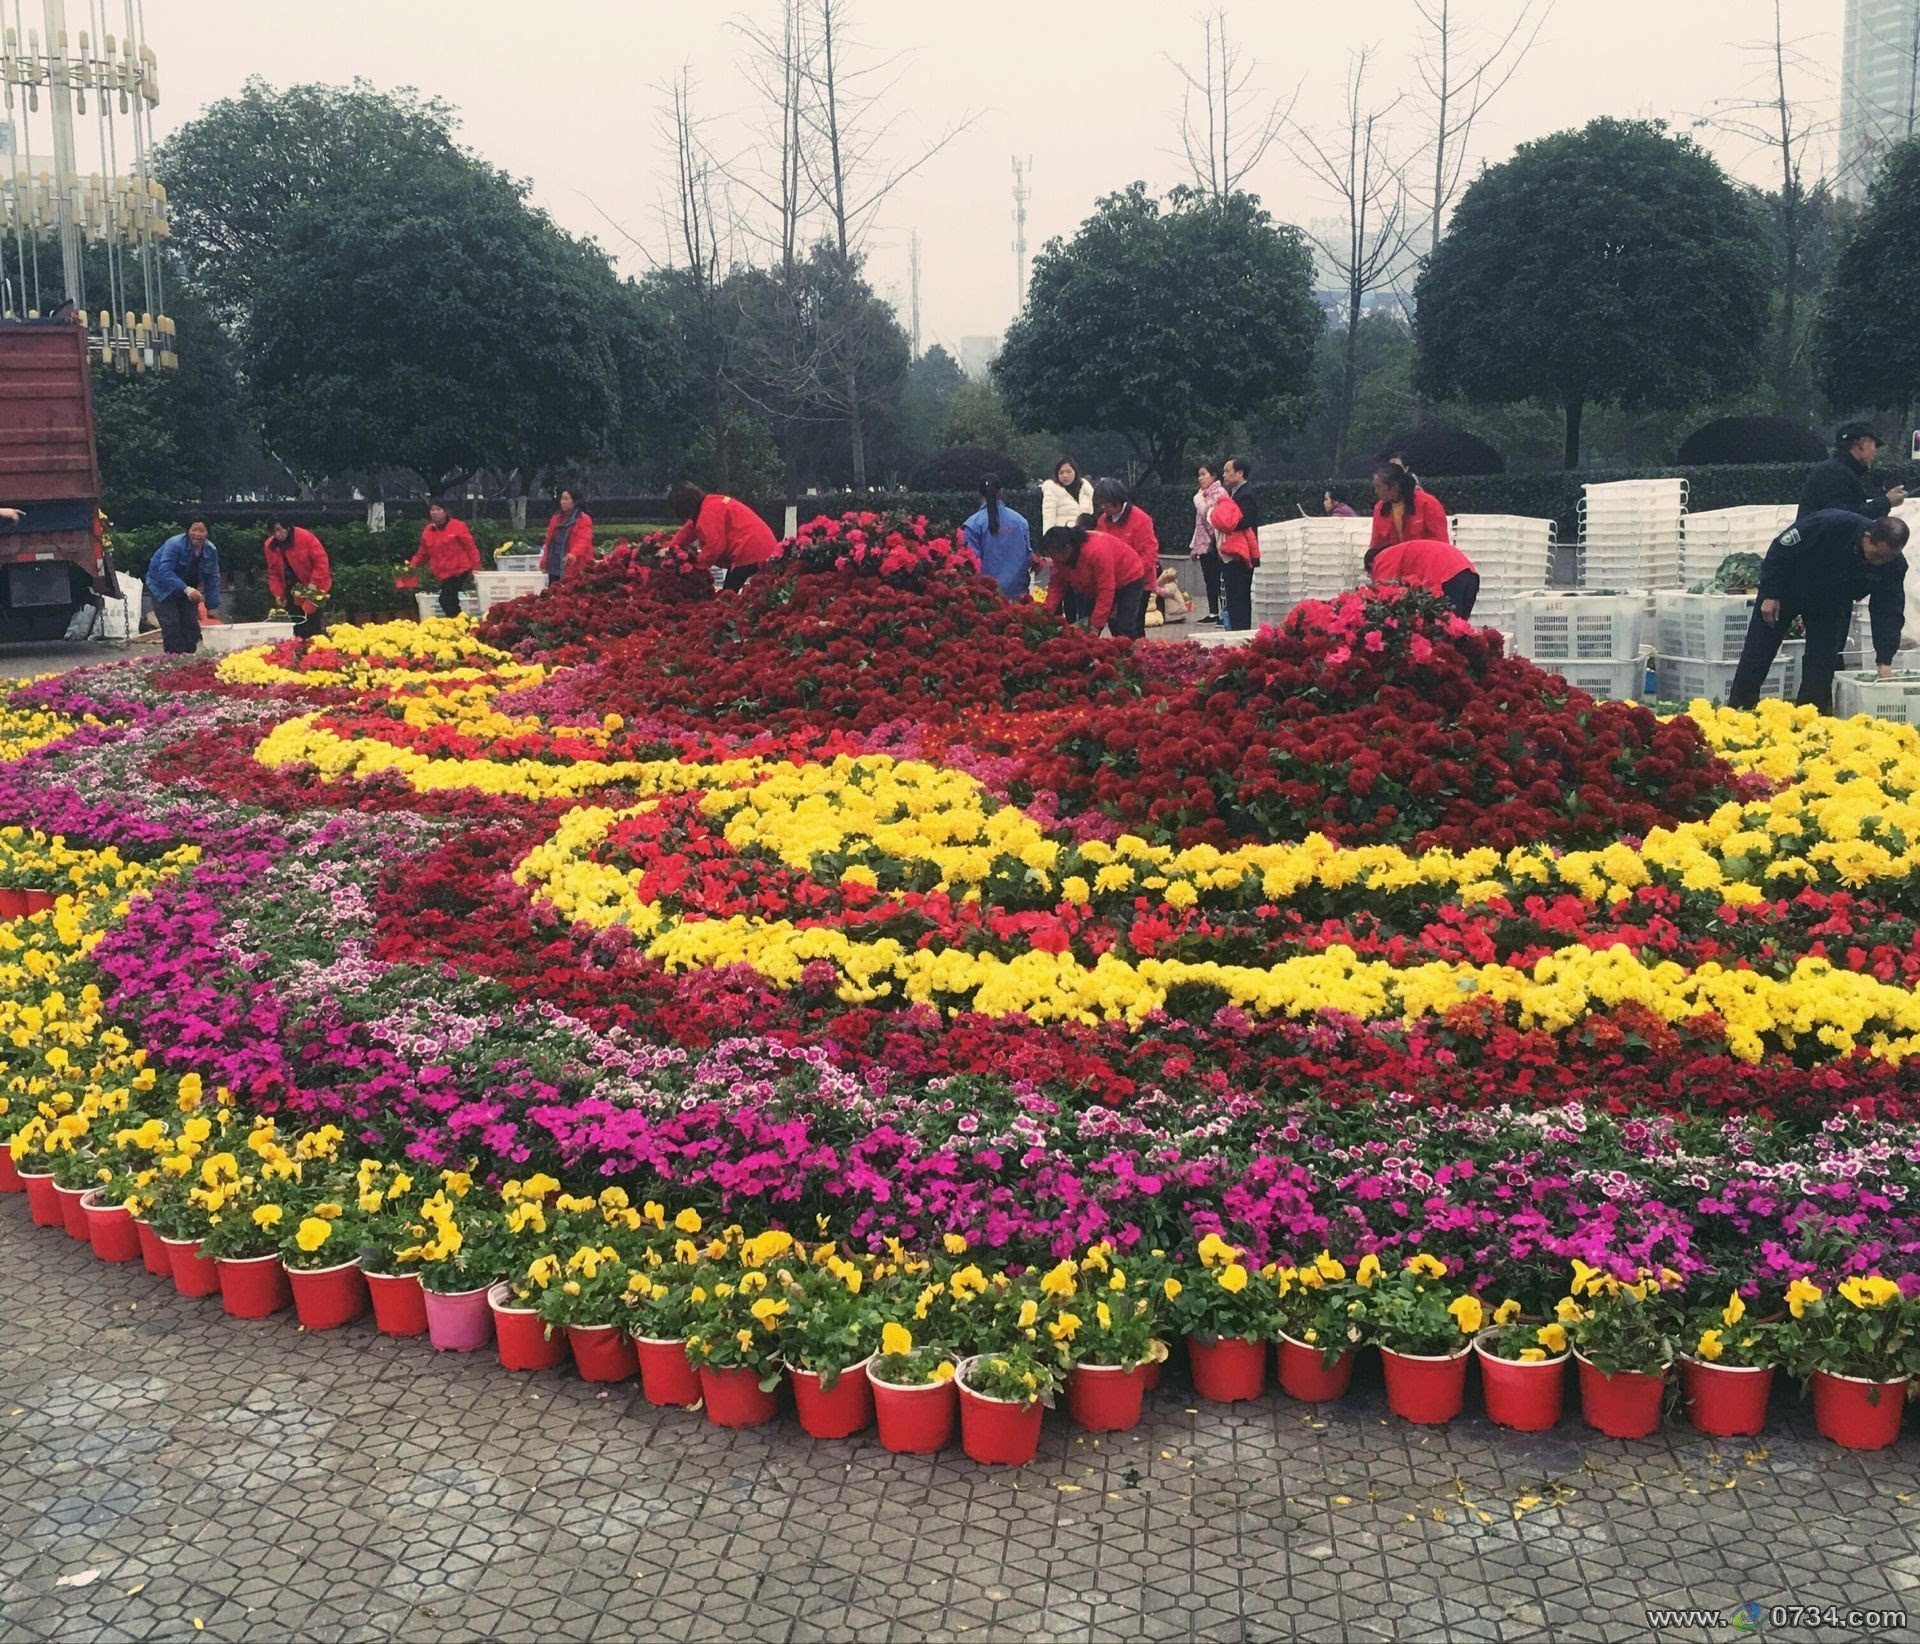 聚焦两会:衡阳城区各处摆放美丽鲜花扮靓雁城